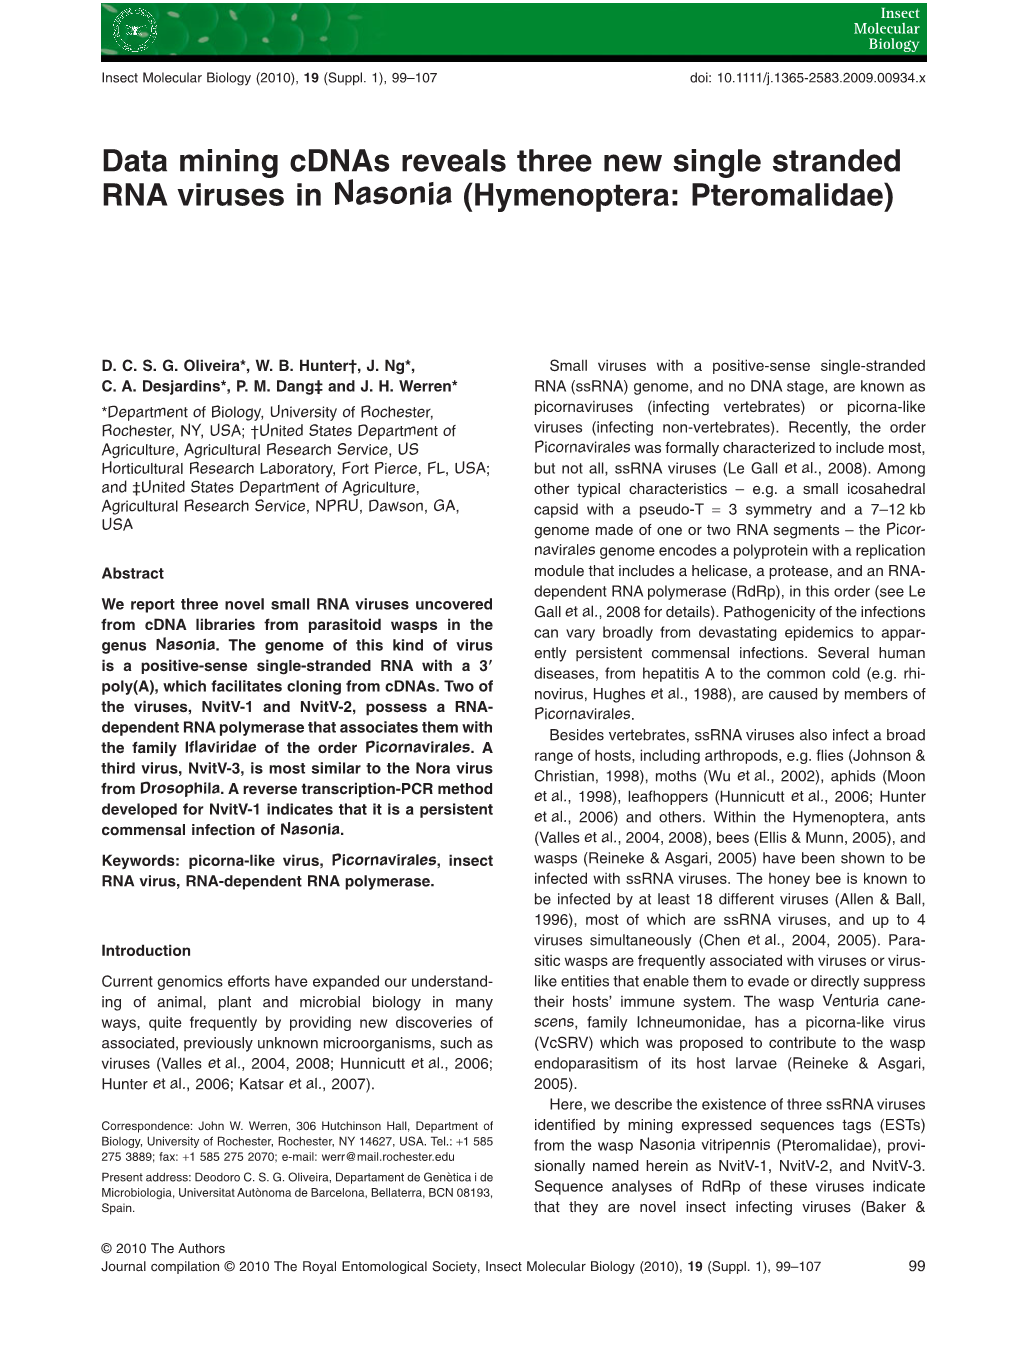 Data Mining Cdnas Reveals Three New Single Stranded RNA Viruses in Nasonia (Hymenoptera: Pteromalidae)